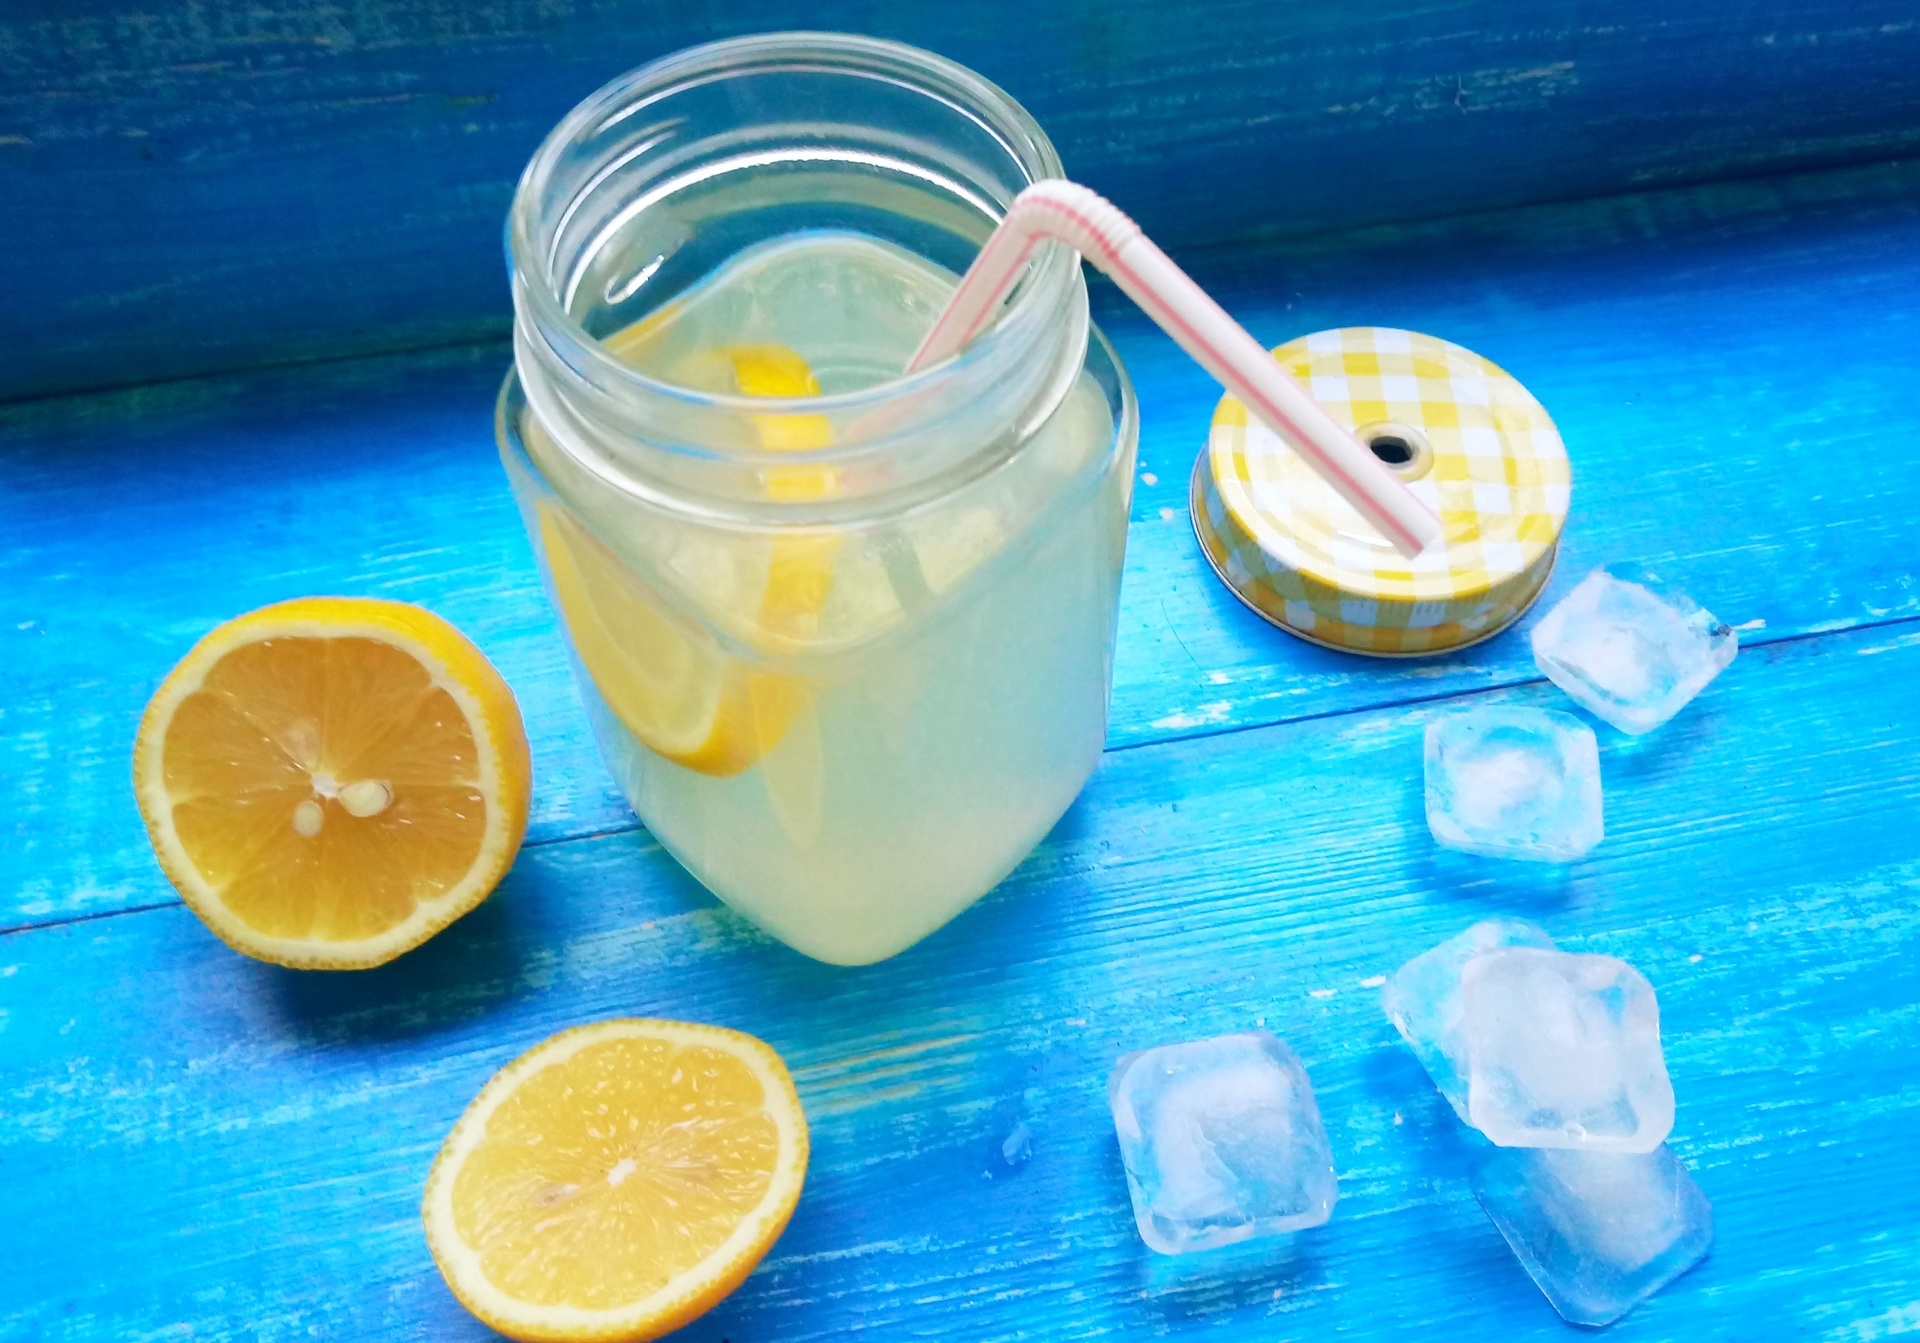 Lemon sugar. Прохладительные напитки. Лимон с сахаром. Лимонад домашний из сахара воды и лимона. Лимонный сок с сахаром.